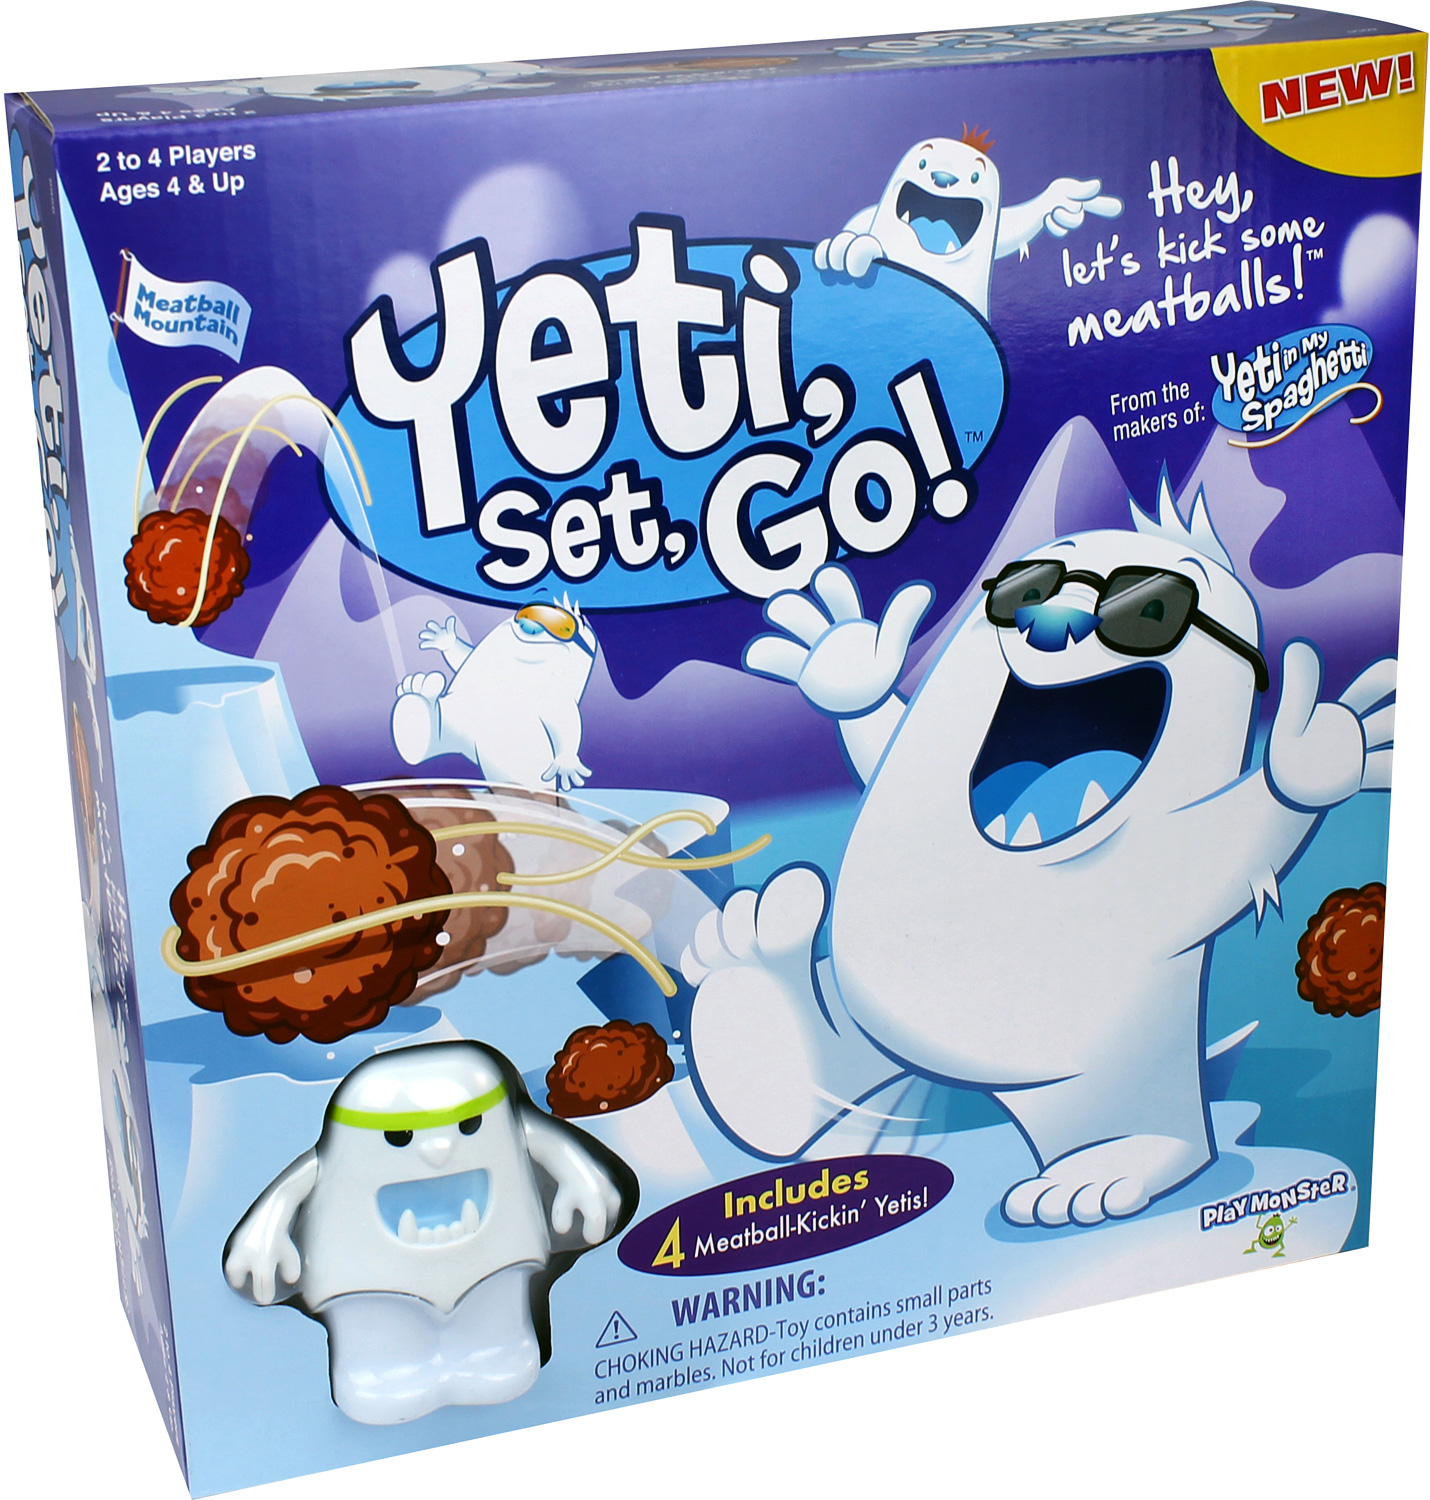 Yeti, Set, Go! - The Village Toy Store